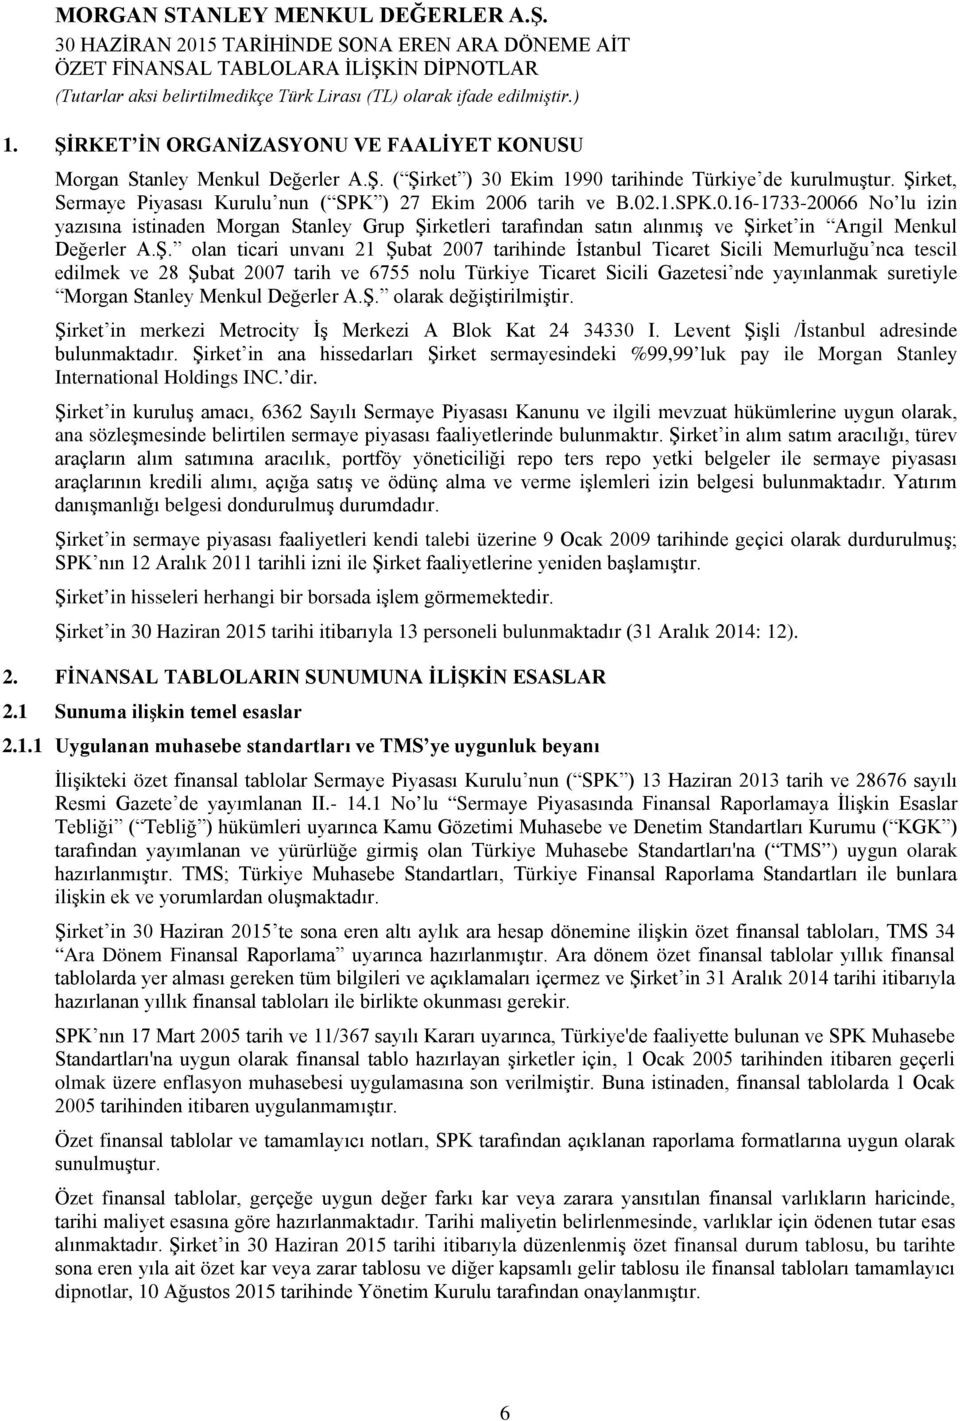 Ş. olan ticari unvanı 21 Şubat 2007 tarihinde İstanbul Ticaret Sicili Memurluğu nca tescil edilmek ve 28 Şubat 2007 tarih ve 6755 nolu Türkiye Ticaret Sicili Gazetesi nde yayınlanmak suretiyle Morgan